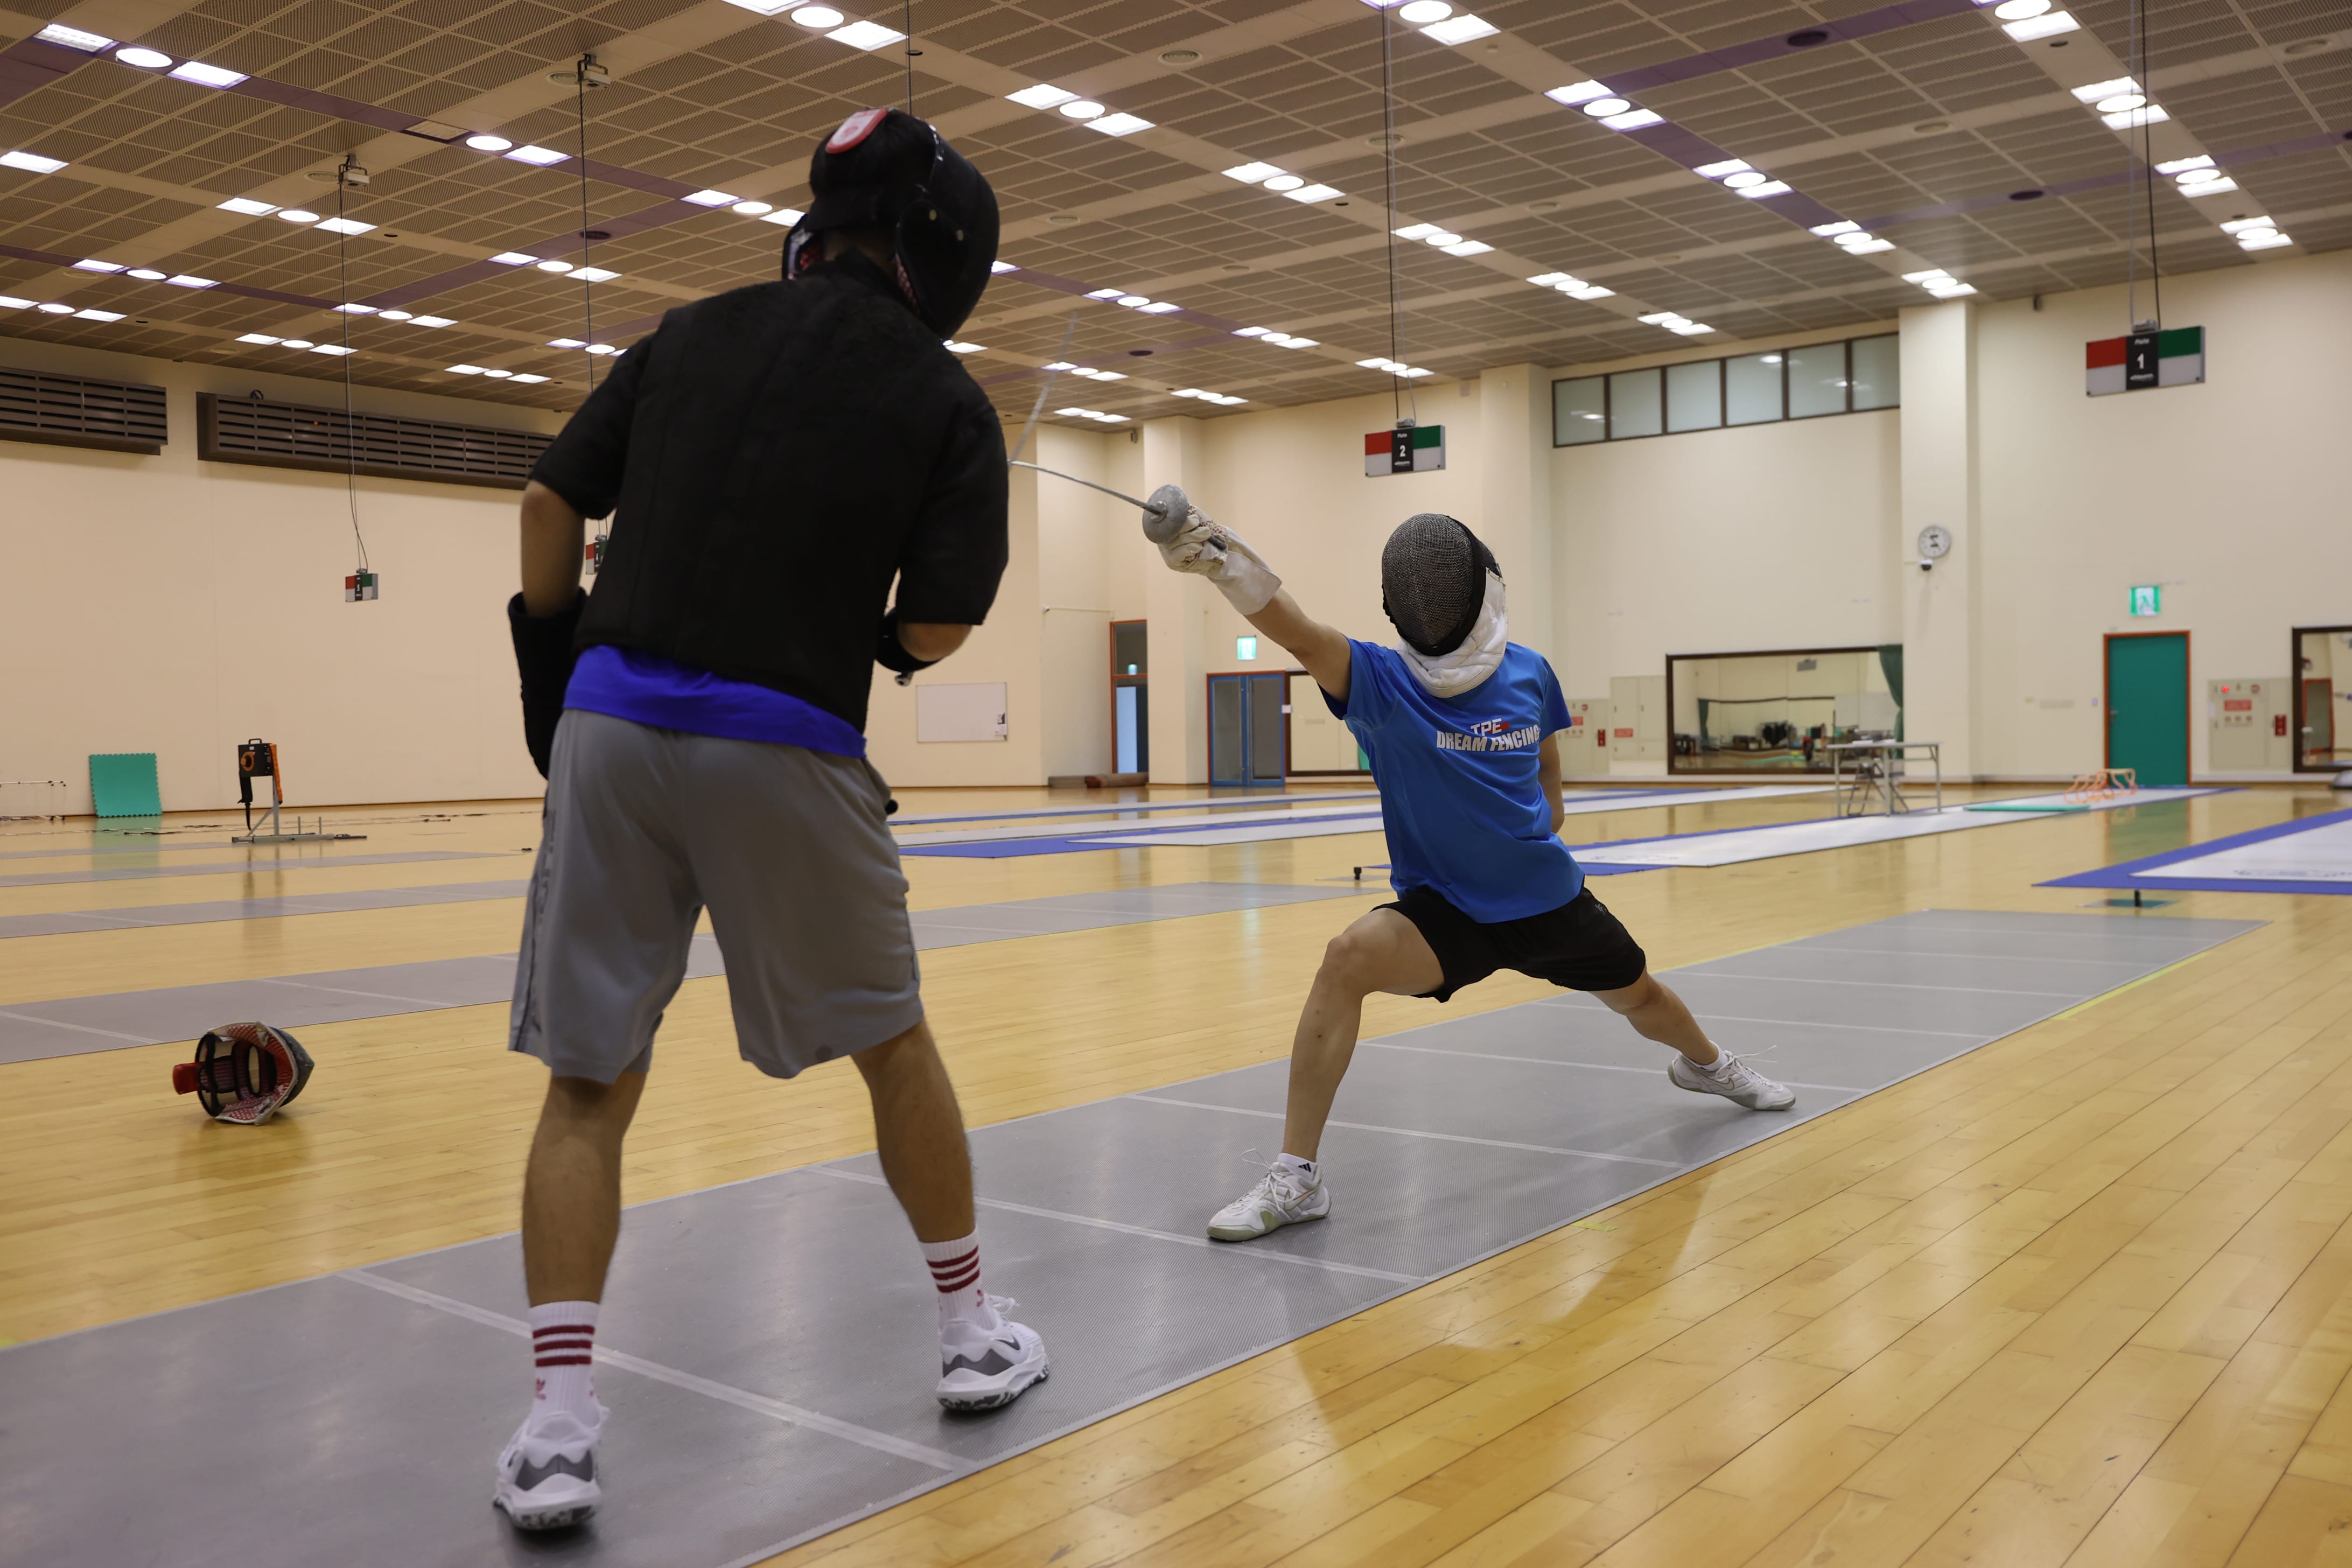 選手進行雙人對抗賽，以提升訓練成效。